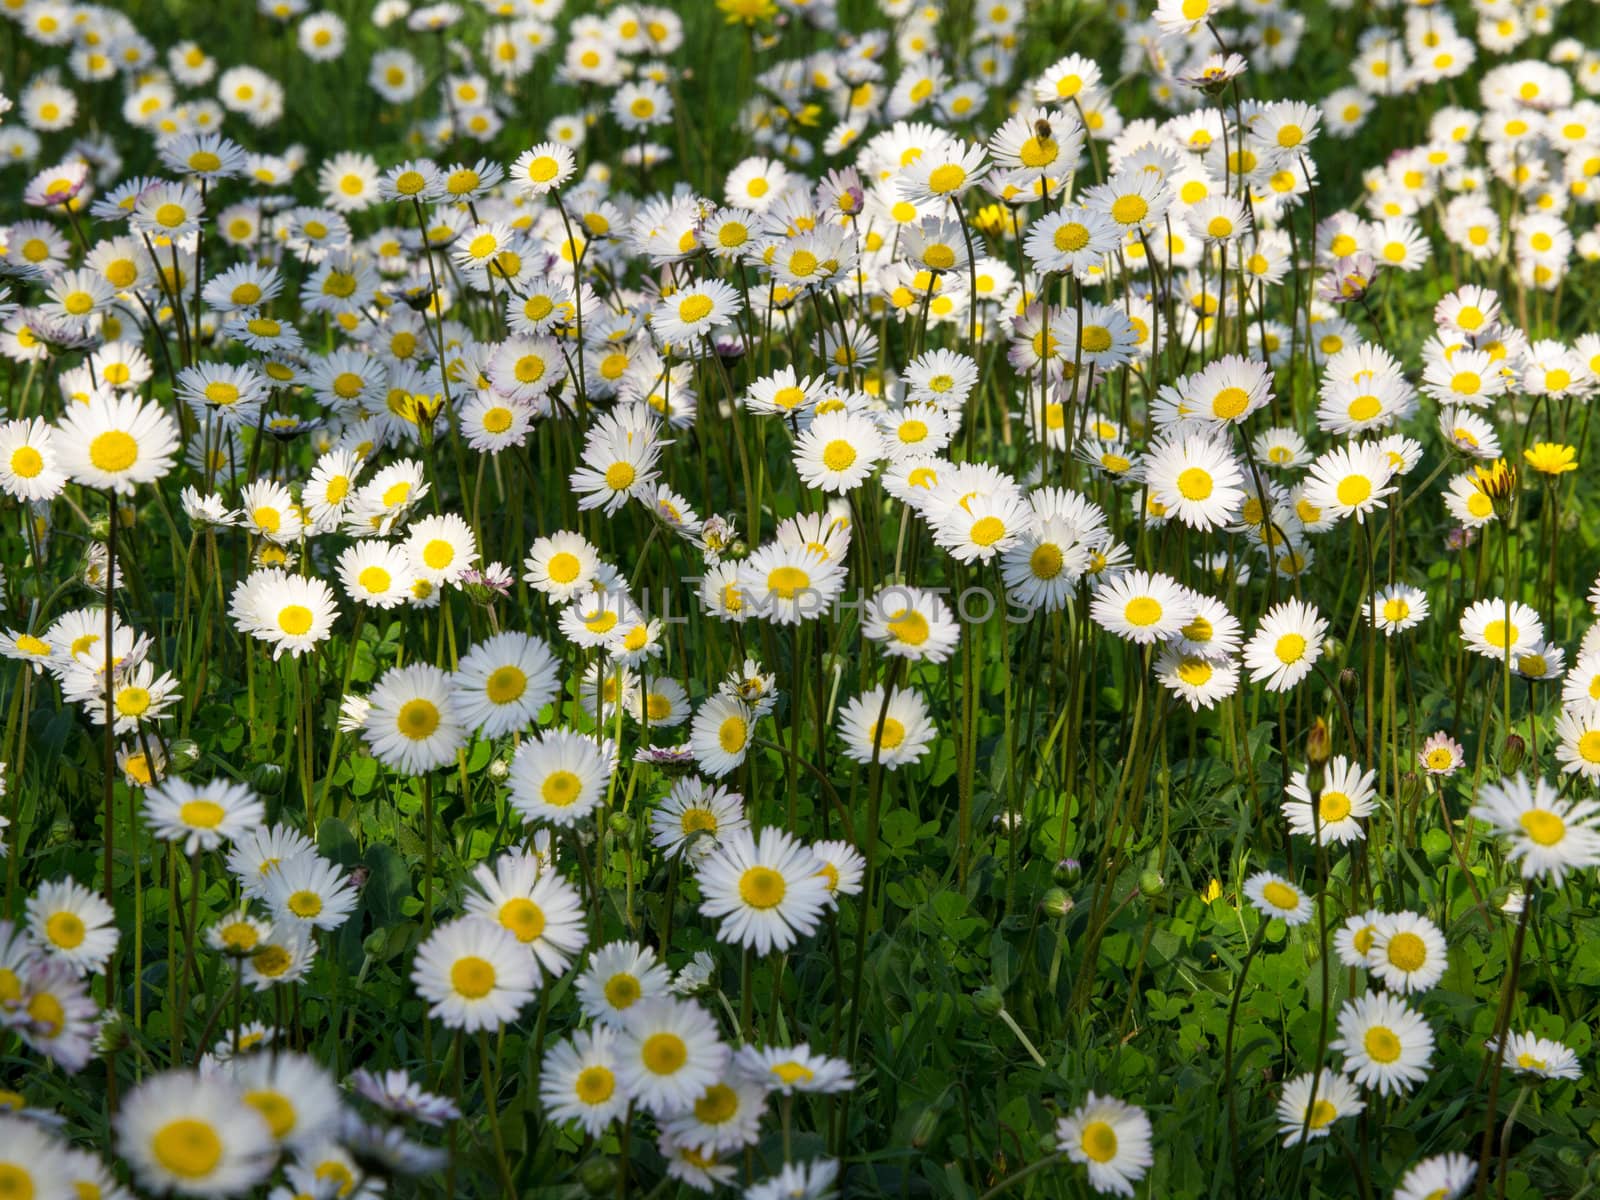 daisy field by nevenm